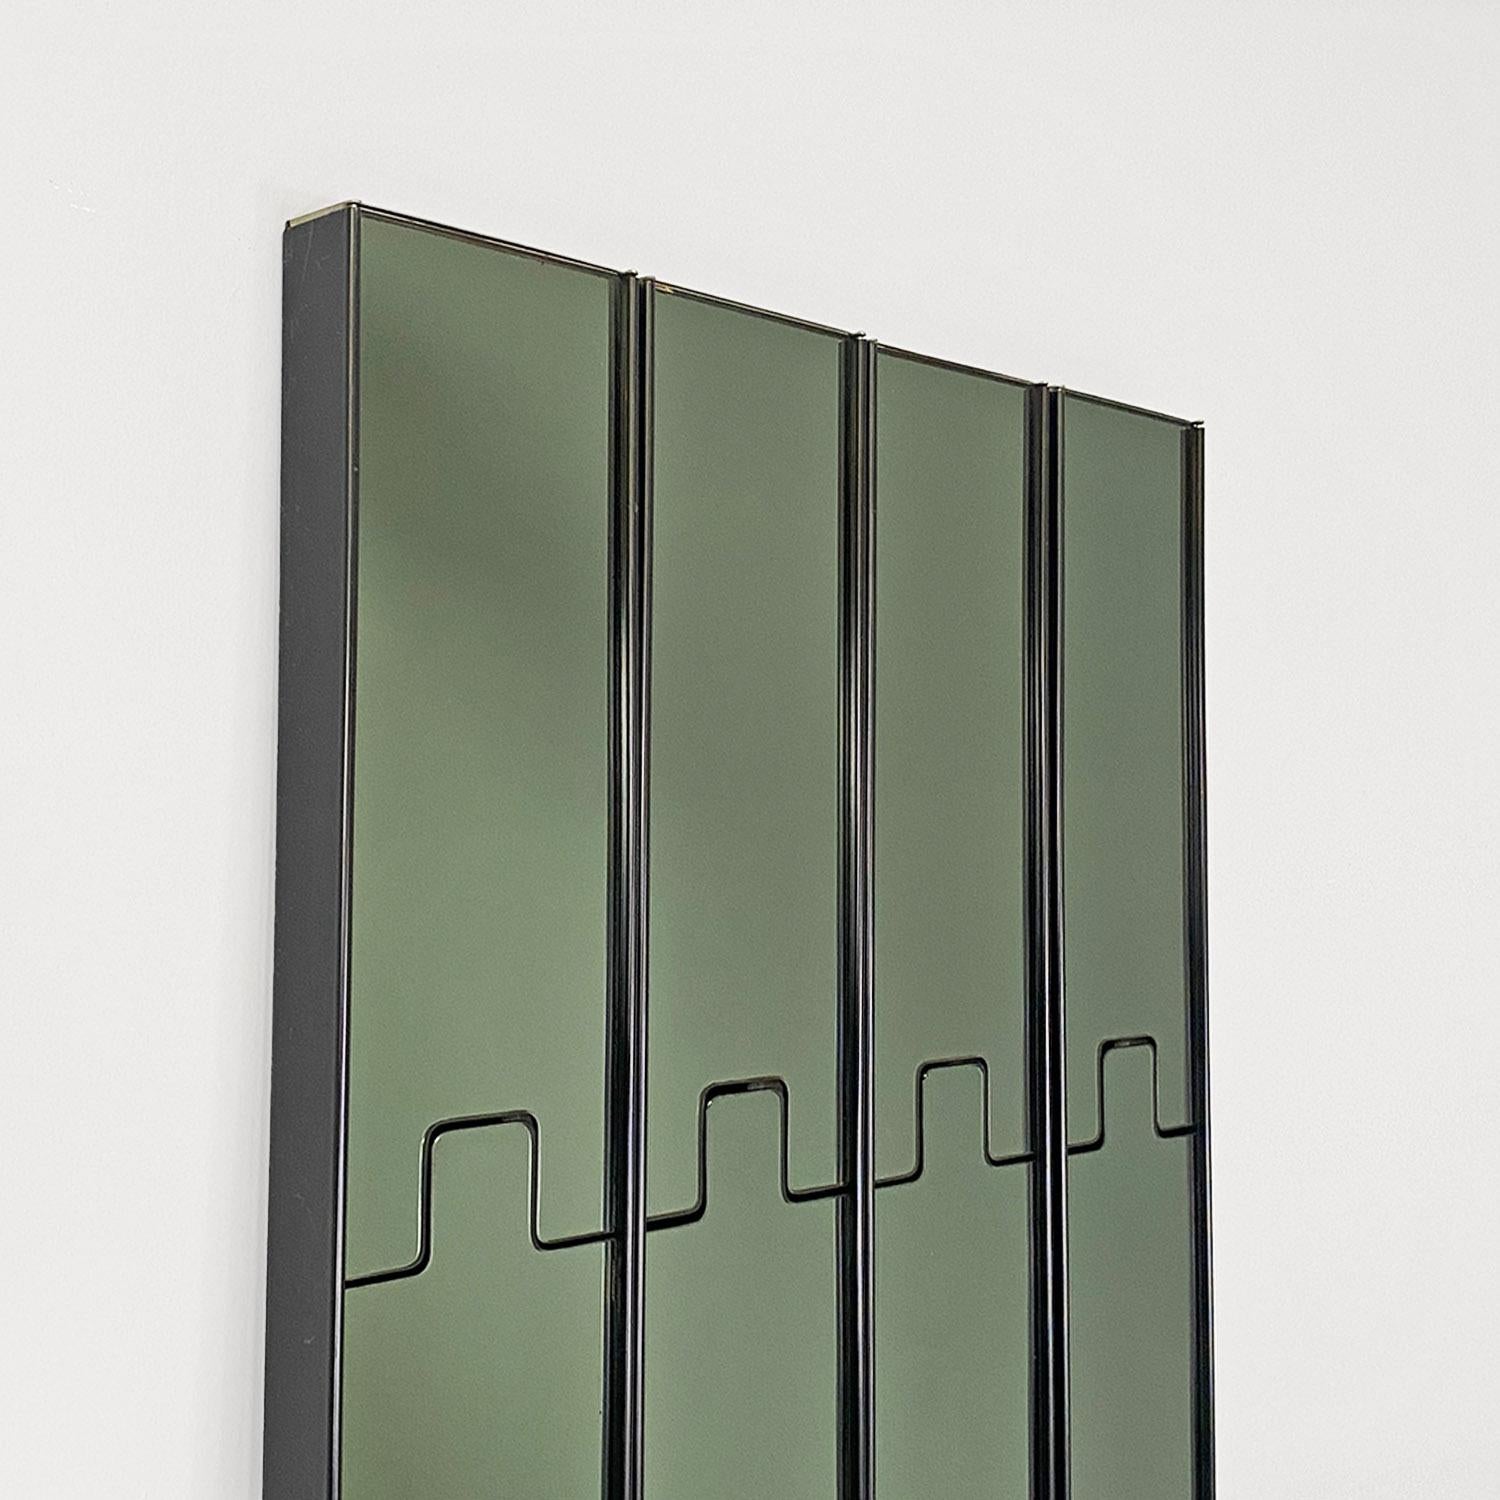 Italian modern glass plastic Gronda wall mirrors, Luciano Bertoncini, Elco 1970s For Sale 1